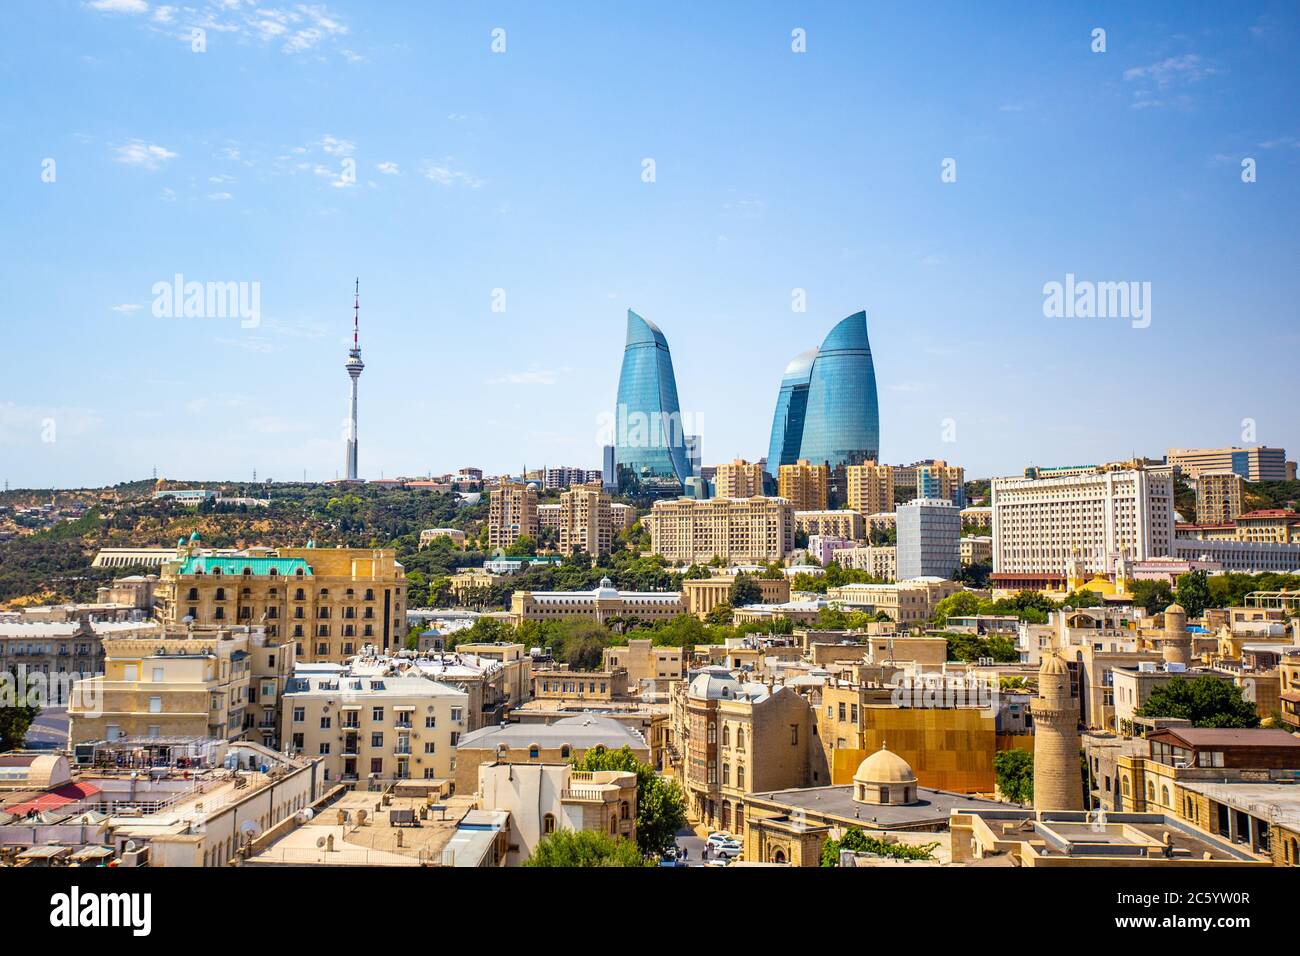 The cityscape of Baku, the capital city of Azerbaijan. Stock Photo